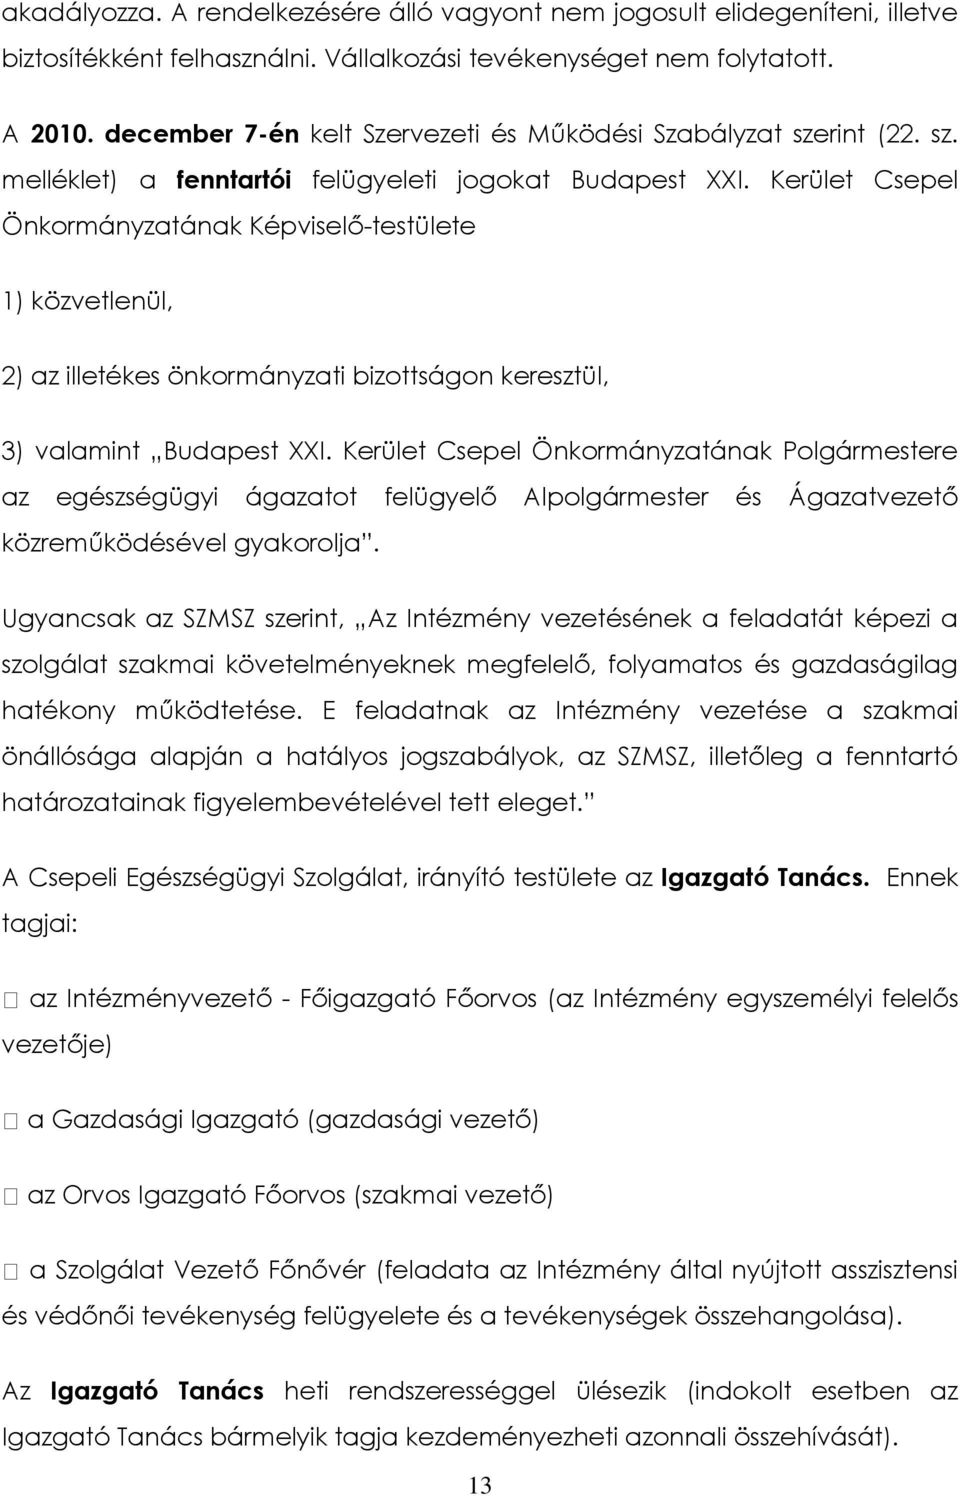 Kerület Csepel Önkormányzatának Képviselő-testülete 1) közvetlenül, 2) az illetékes önkormányzati bizottságon keresztül, 3) valamint Budapest XXI.